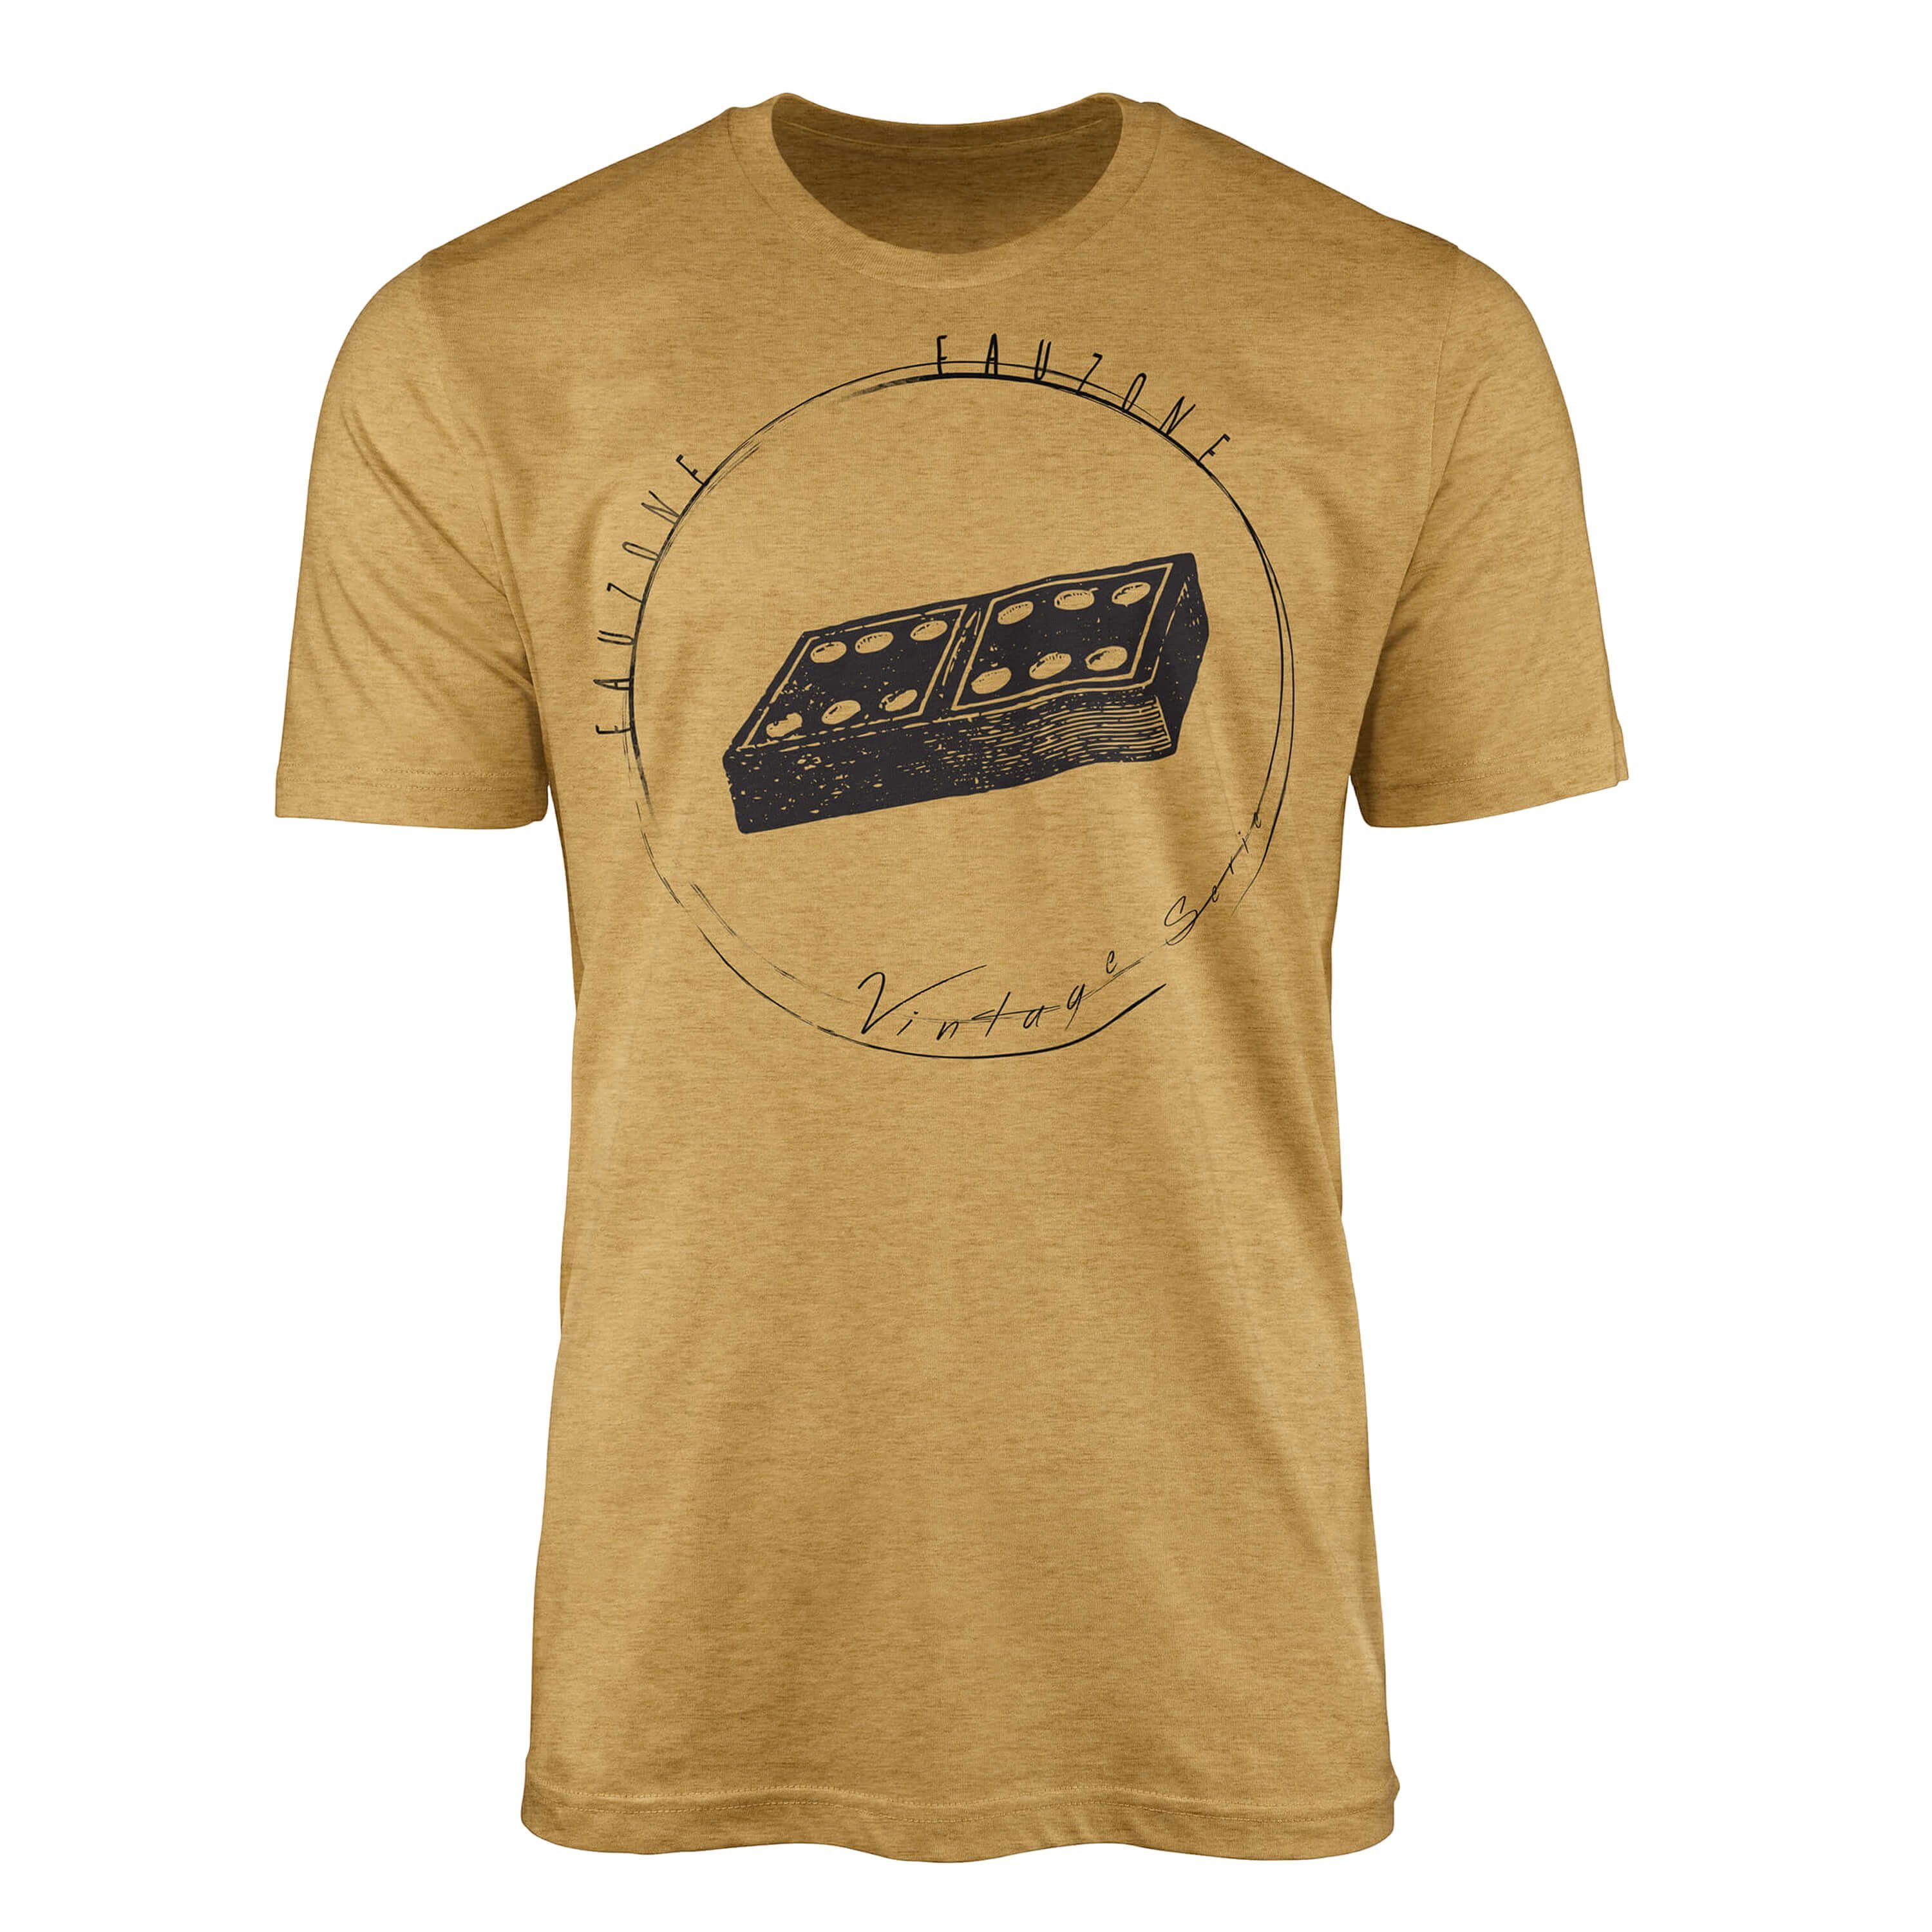 Sinus Art T-Shirt Vintage Herren T-Shirt Dominostein Antique Gold